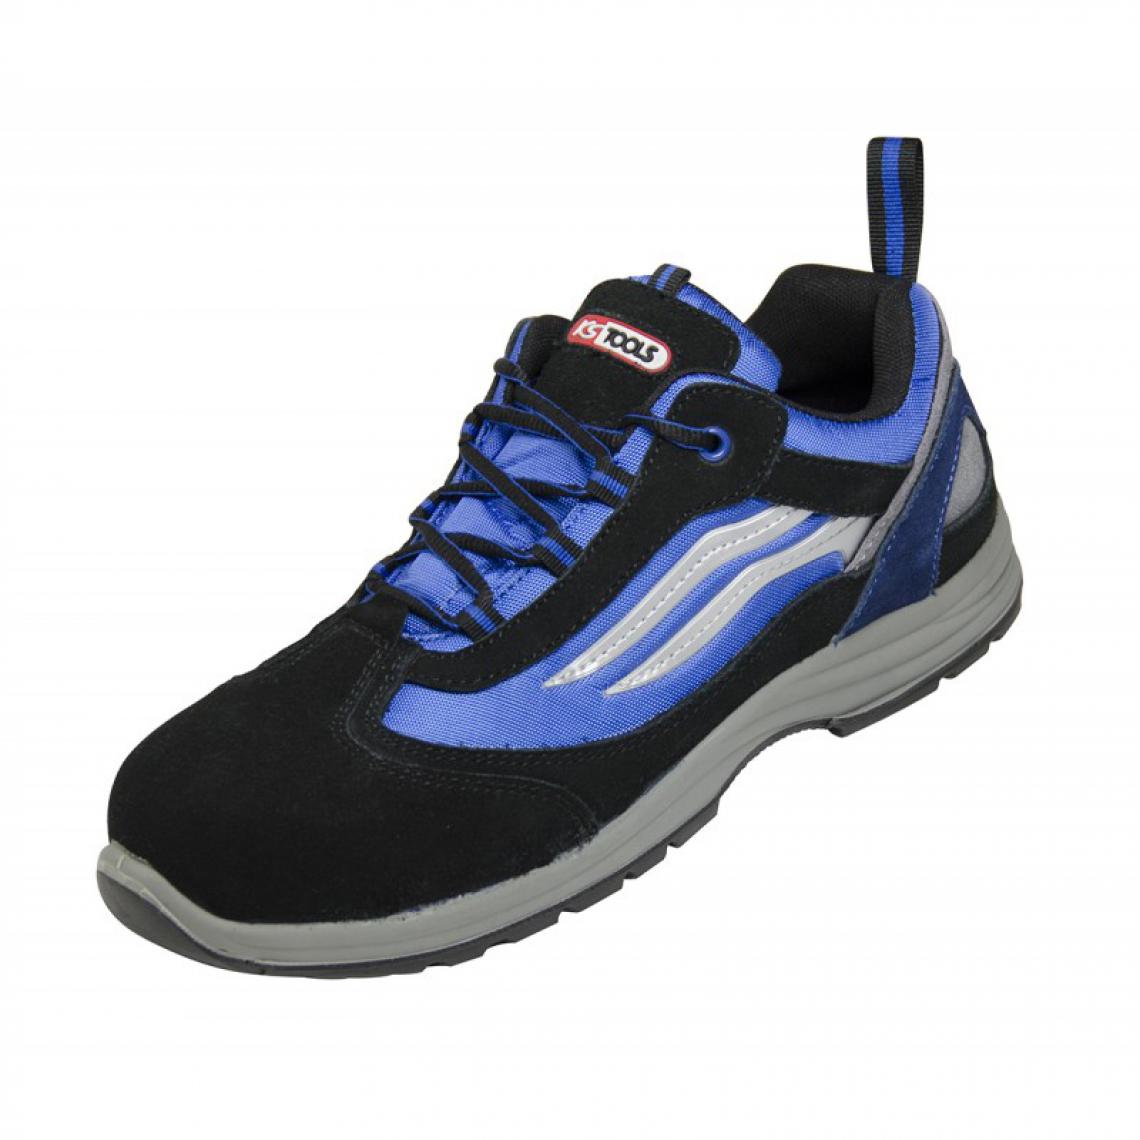 Kstools - Chaussures de sécurité KSTOOLS Couleur bleue et noire taille 44 - Equipement de Protection Individuelle